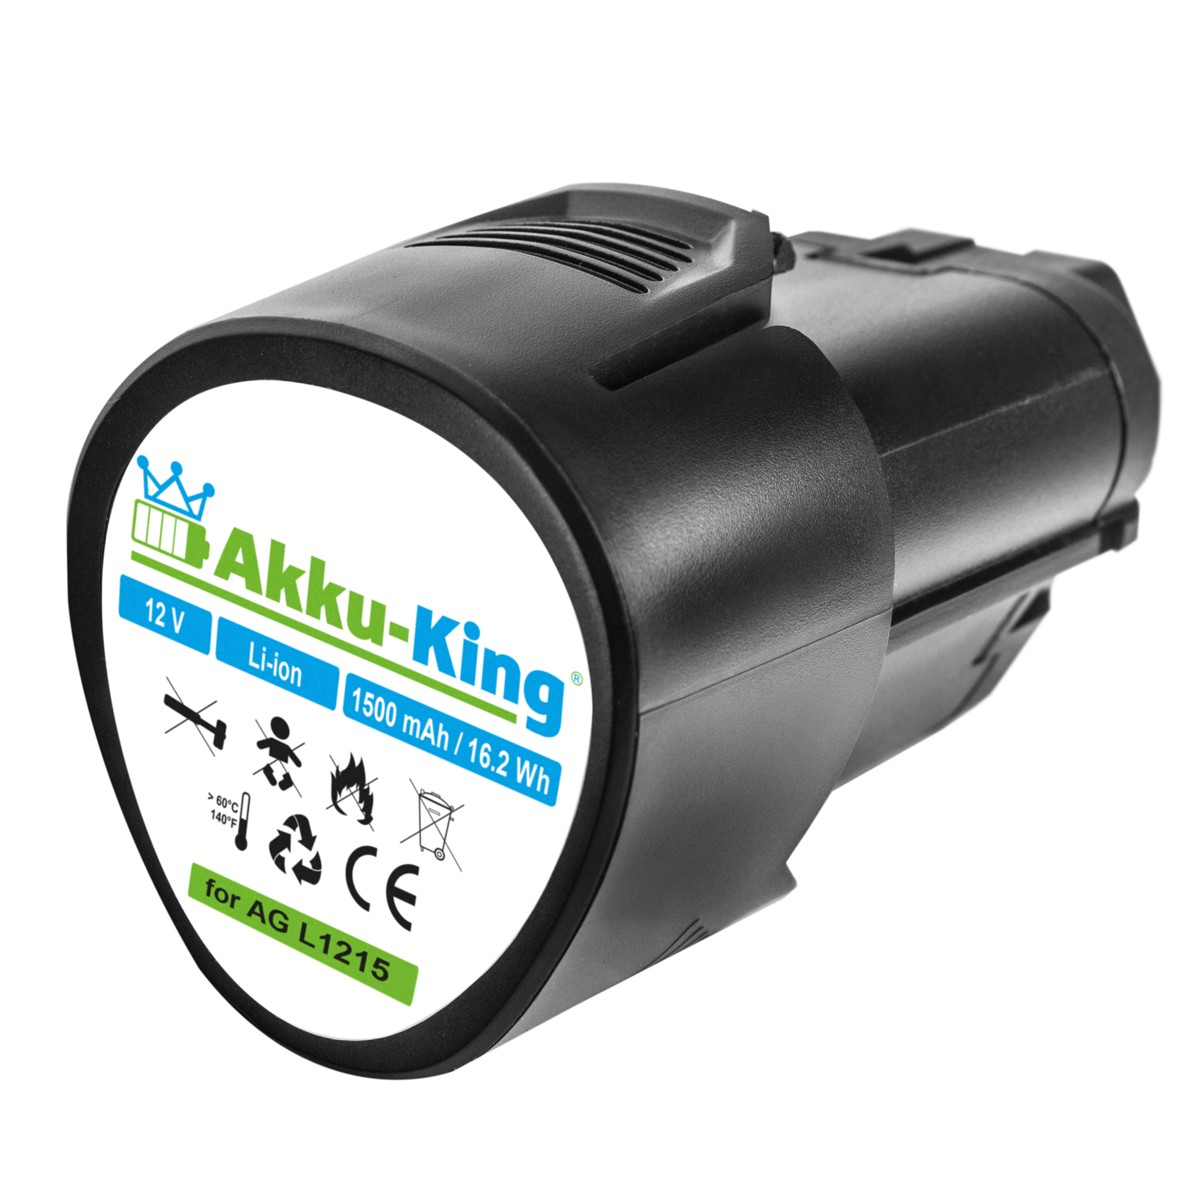 AKKU-KING Akku kompatibel mit AEG 1500mAh L1215 Volt, Li-Ion 12.0 Werkzeug-Akku